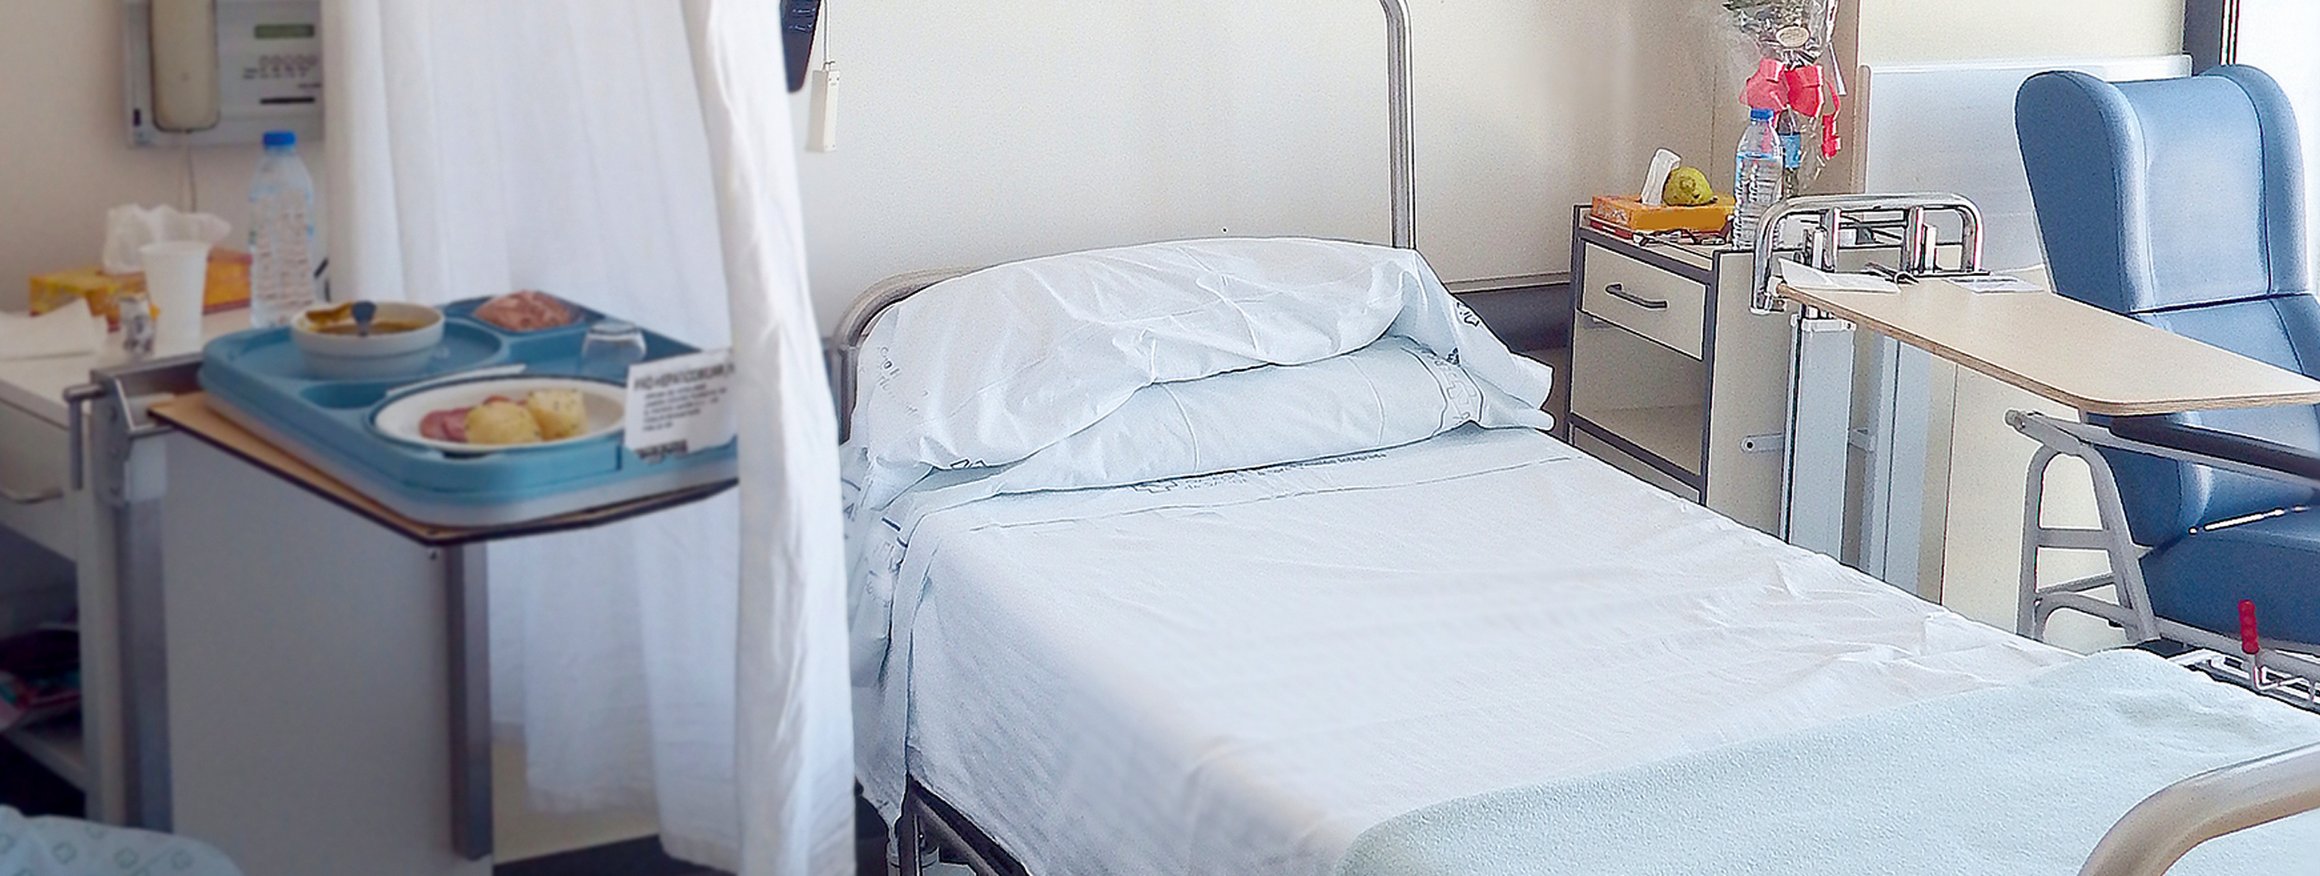 Ein Bett in einem Krankenhaus